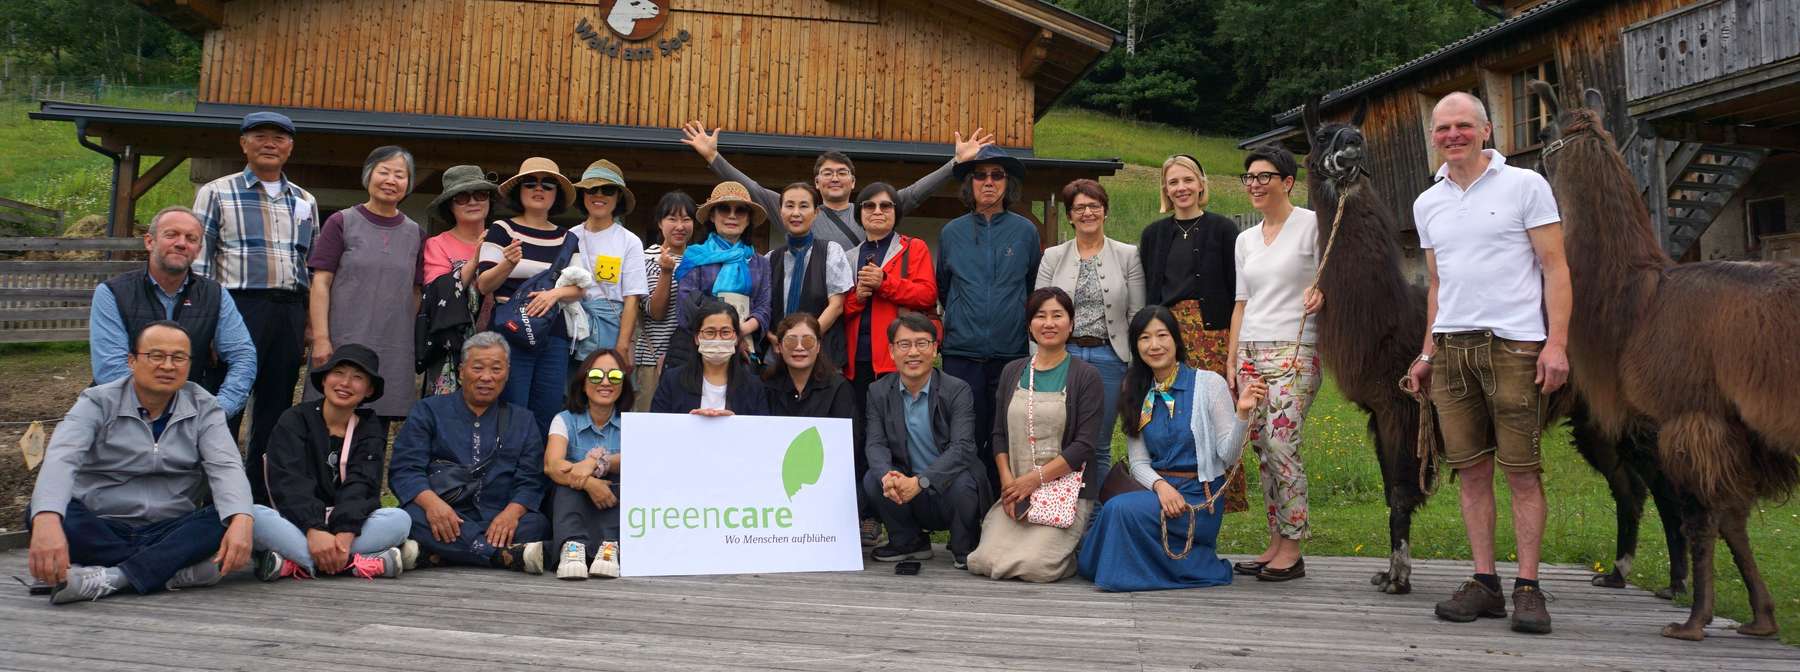 Exkursionsgruppe aus Südkorea besucht GC Betrieb Wald am See.jpg